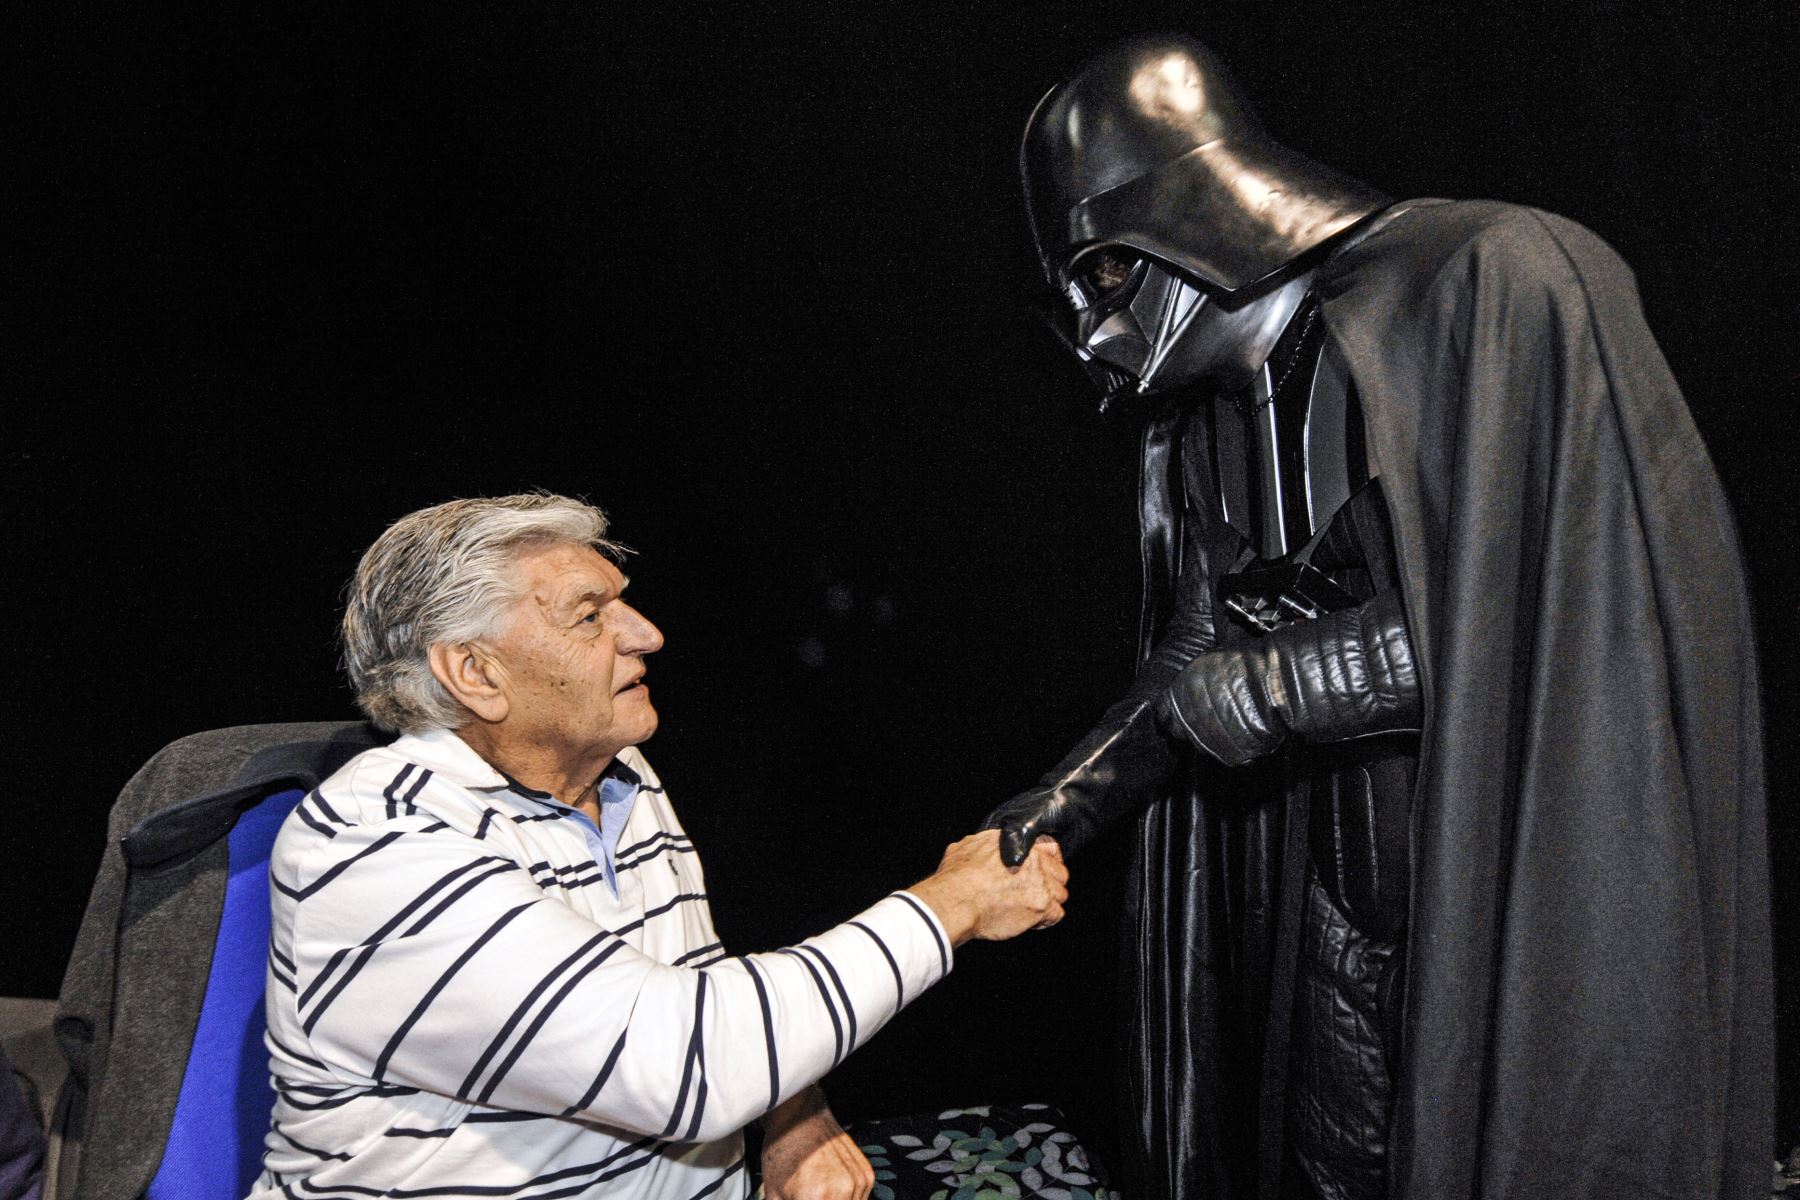 El actor inglés David Prowse quien interpretó al personaje de Darth Vader en la primera trilogía de Star Wars, le estrecha la mano a un fan vestido con un disfraz de este personaje, el 27 de abril de 2013, en Cusset. Foto: AFP